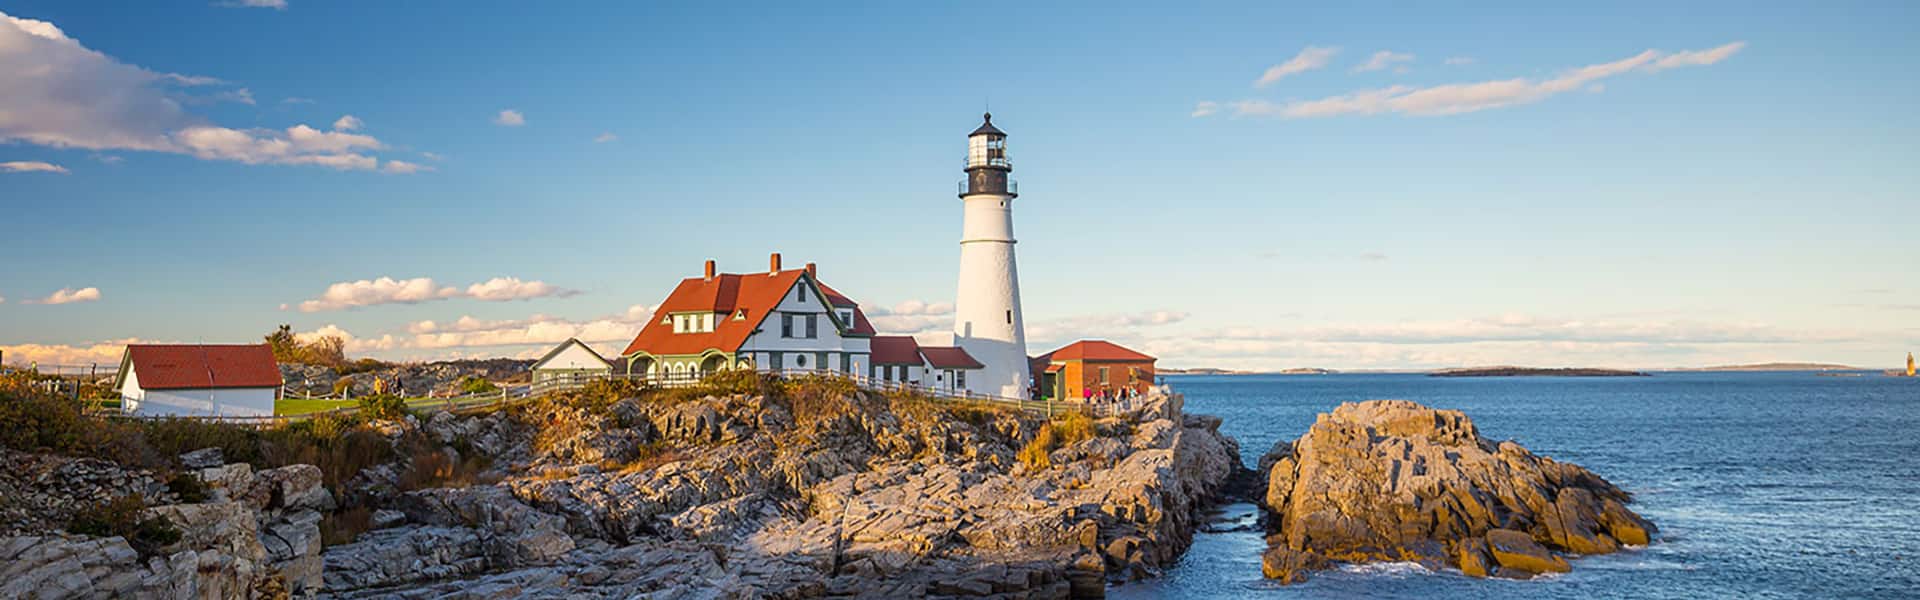 Canada e New England: Portland e Bar Harbor